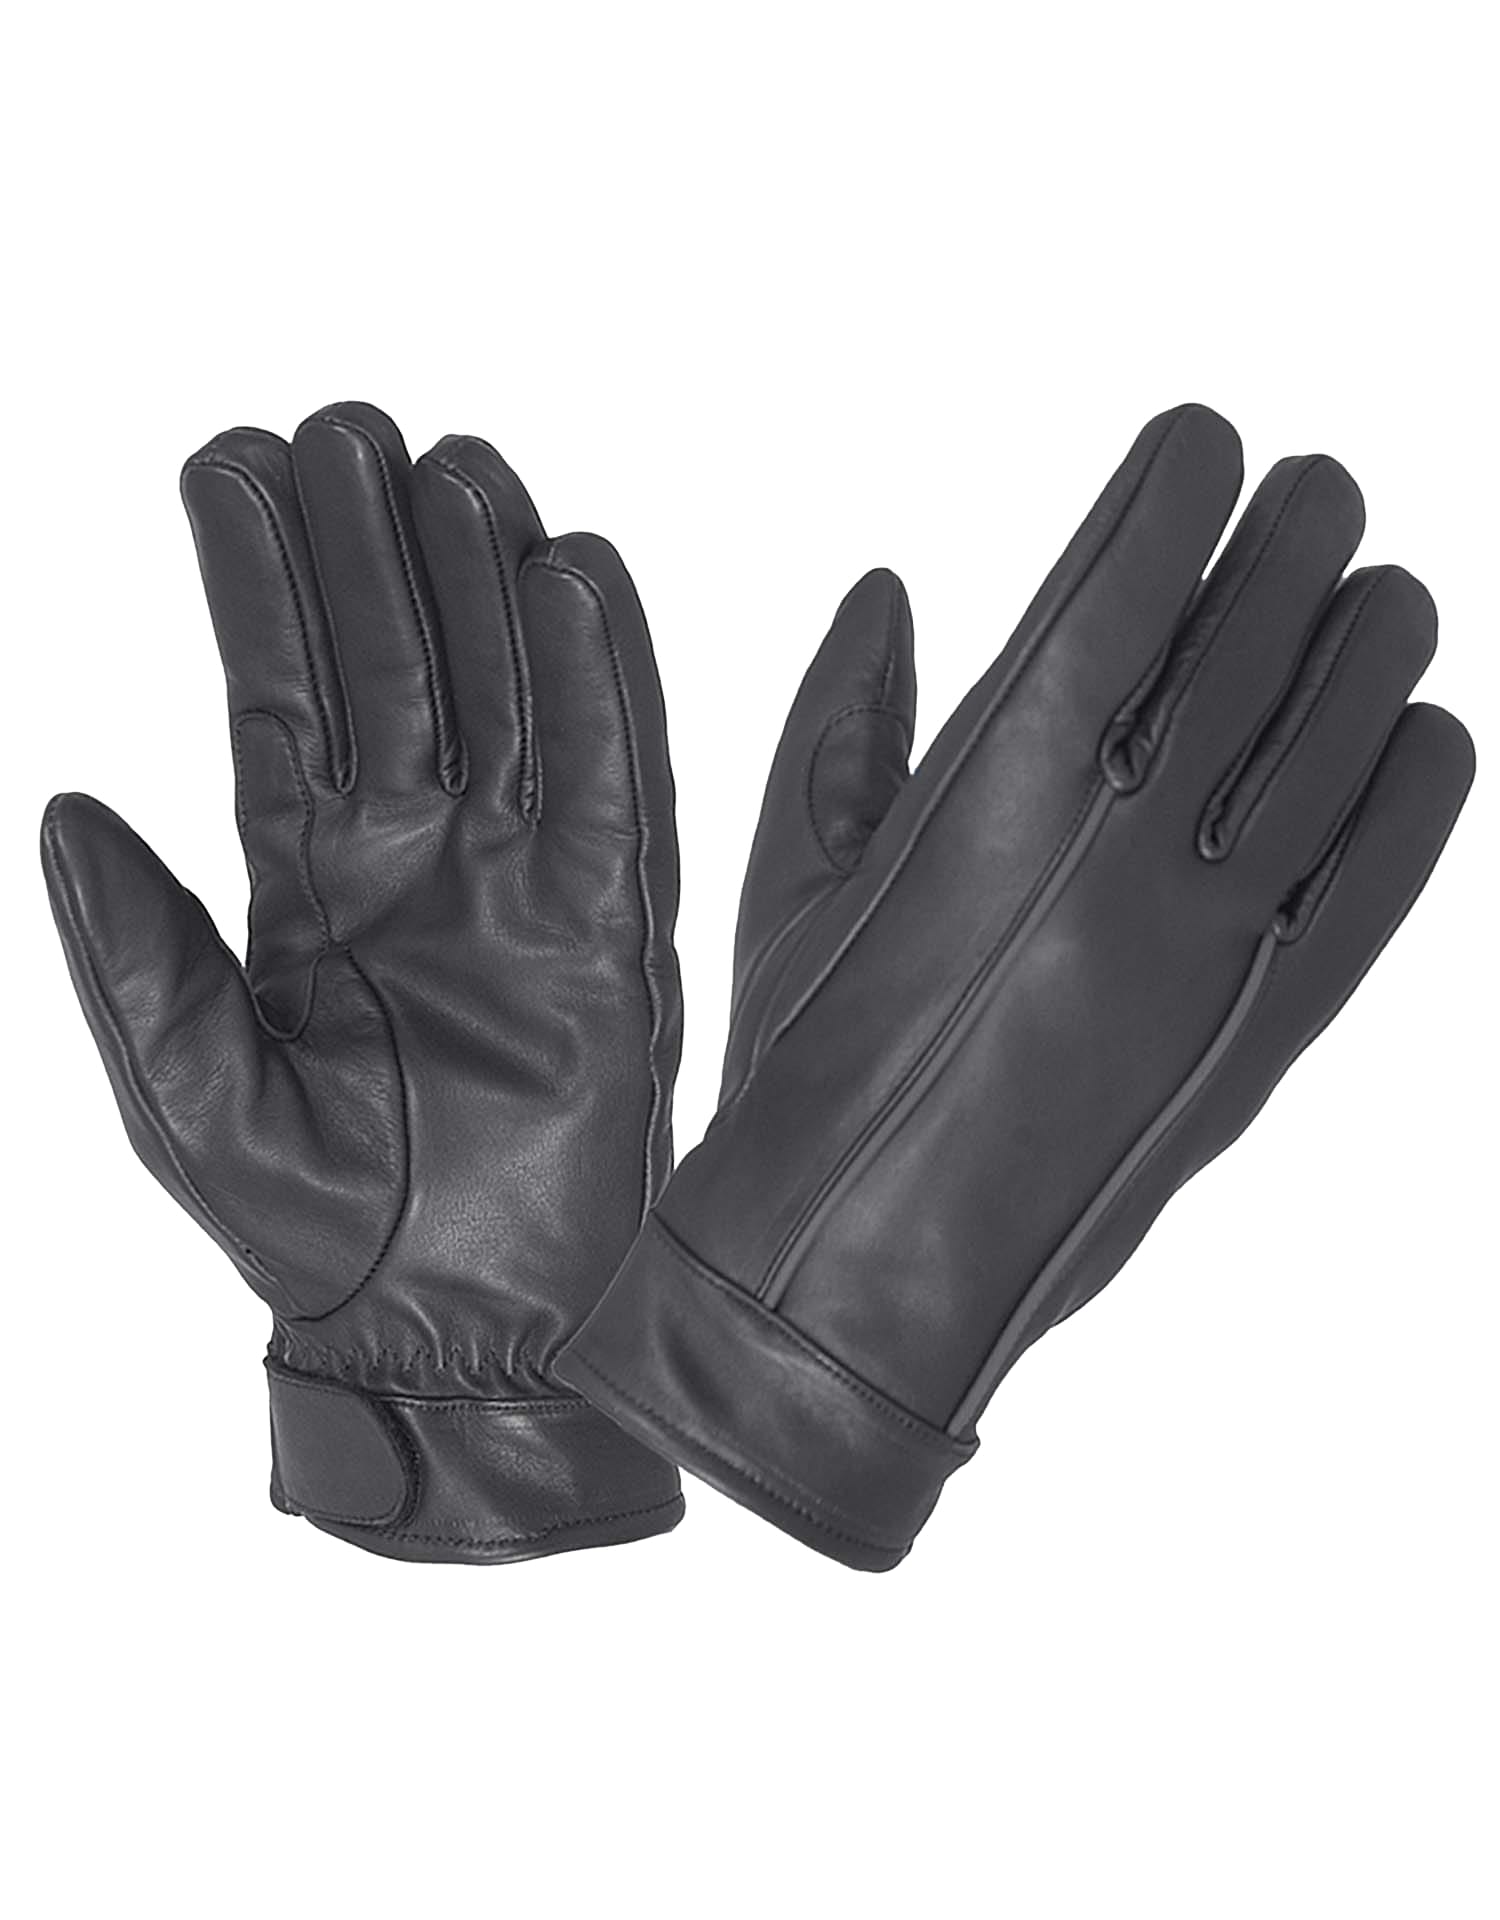 Men's Full Finger Leather Gloves